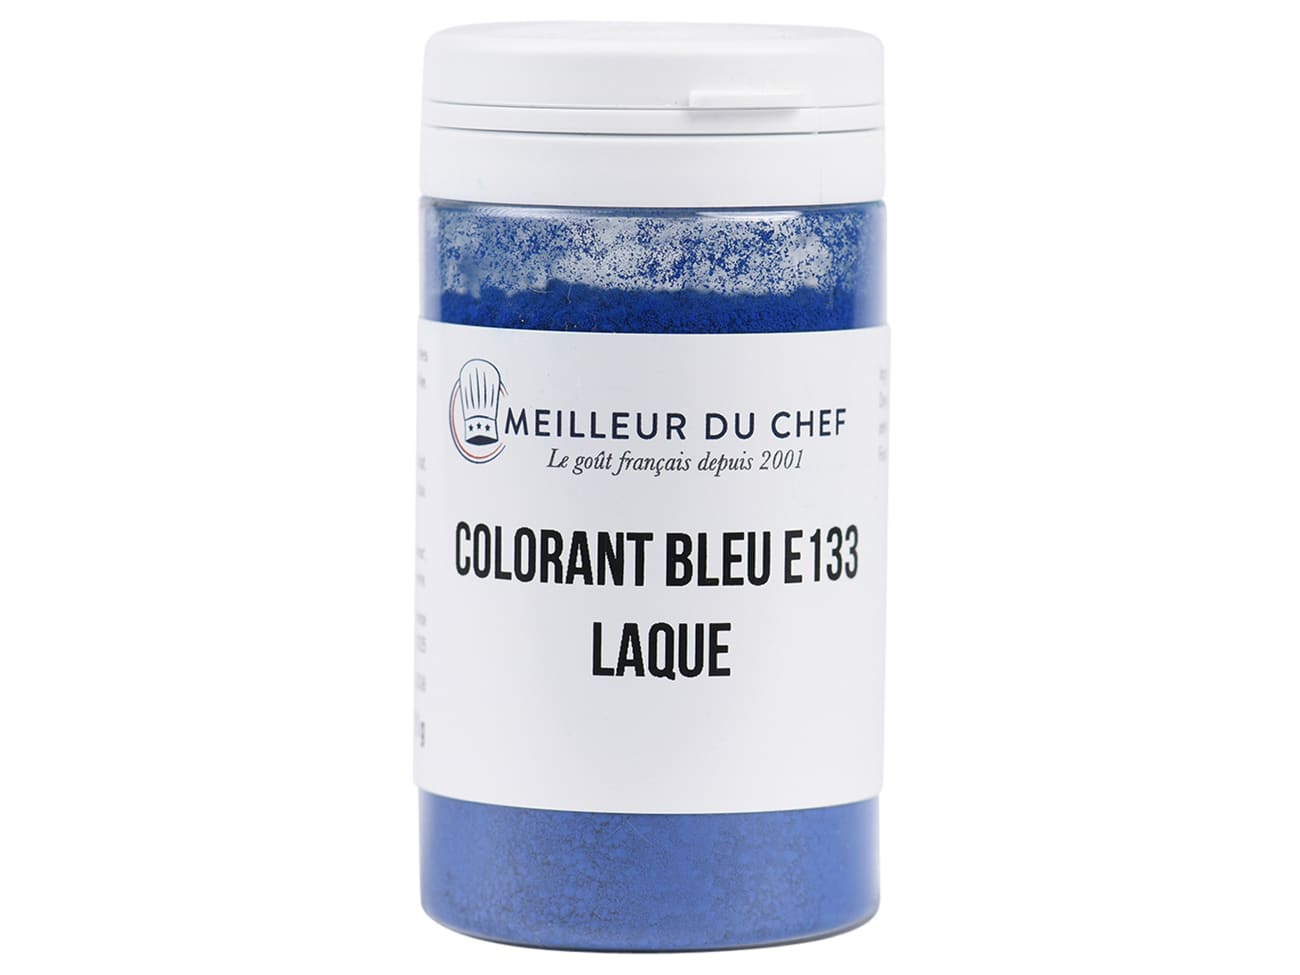 Colorant bleu intense (poudre alimentaire) 50 g